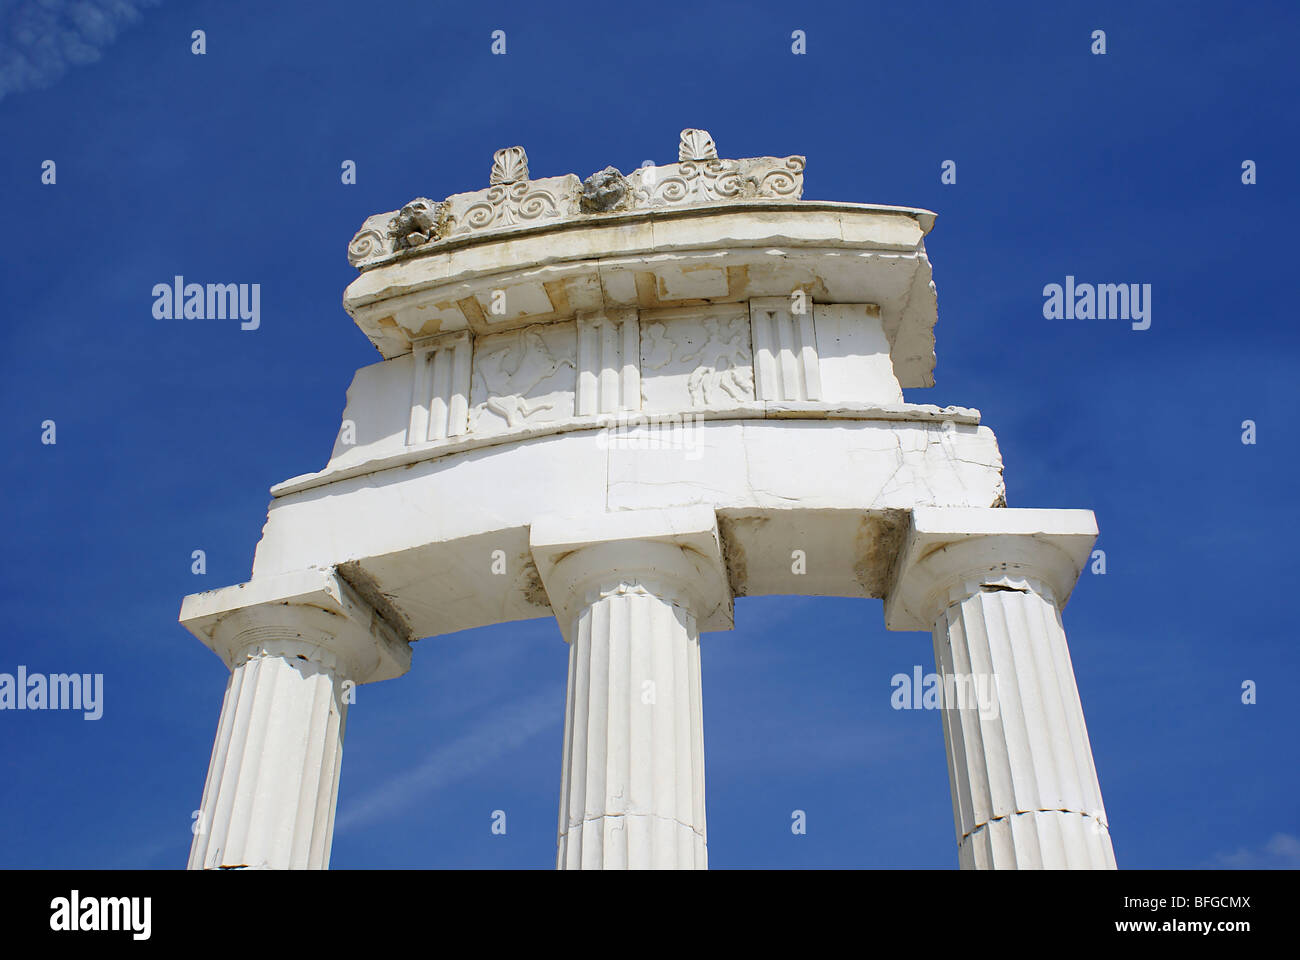 Architettura greca con marmo bianco Foto Stock